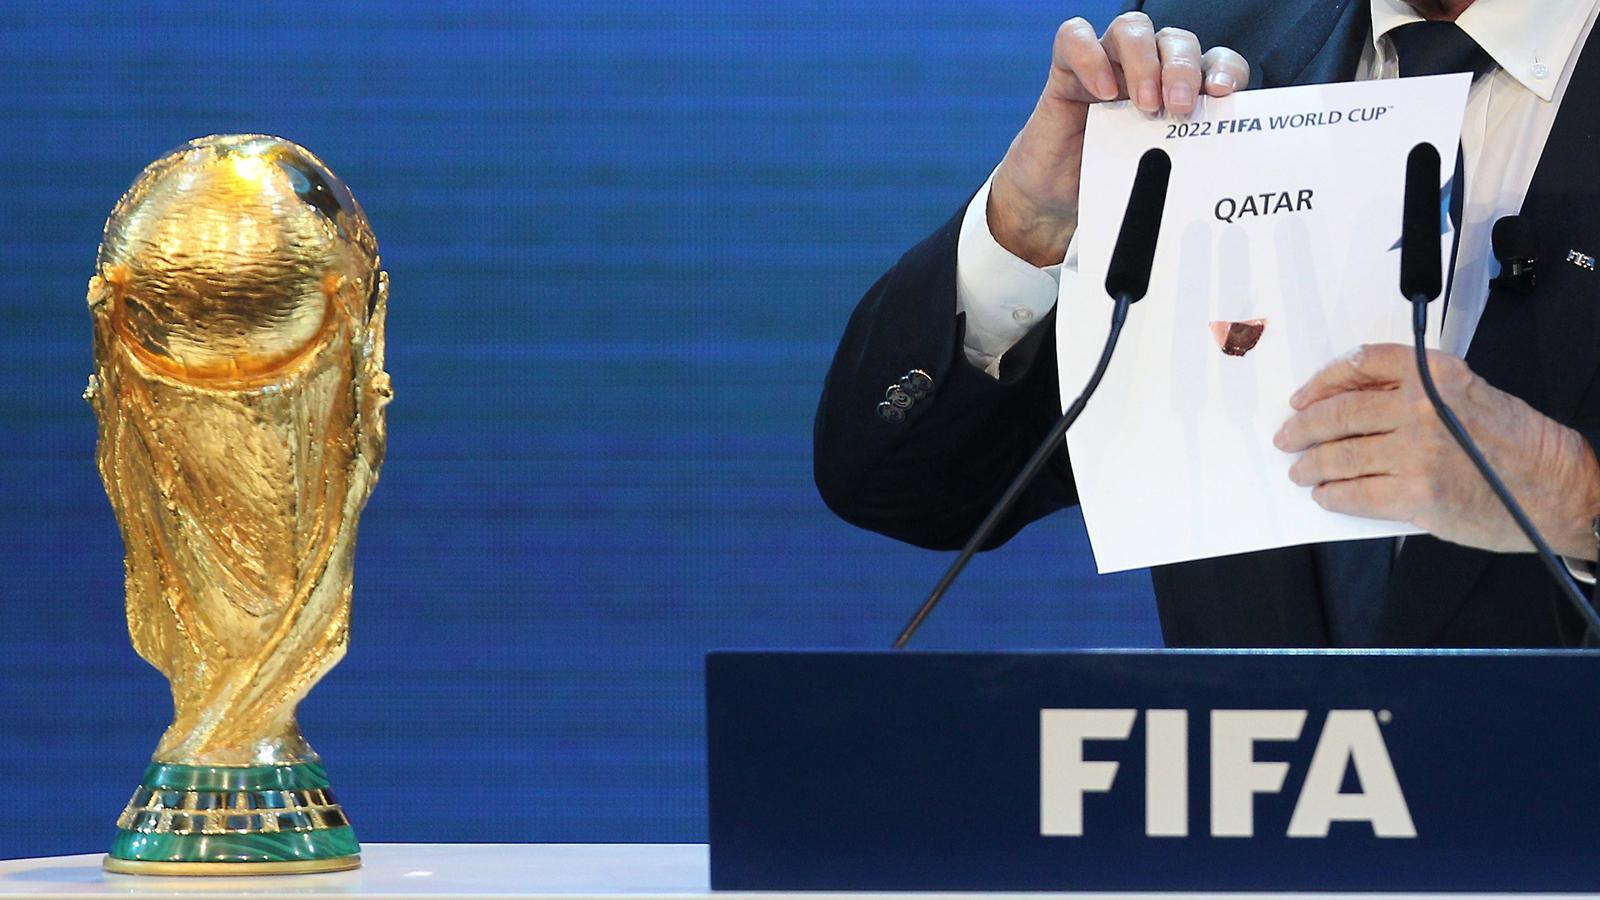 الحكومة الدول العربية تضغط على الفيفا لسحب كأس العالم 2022 من قطر